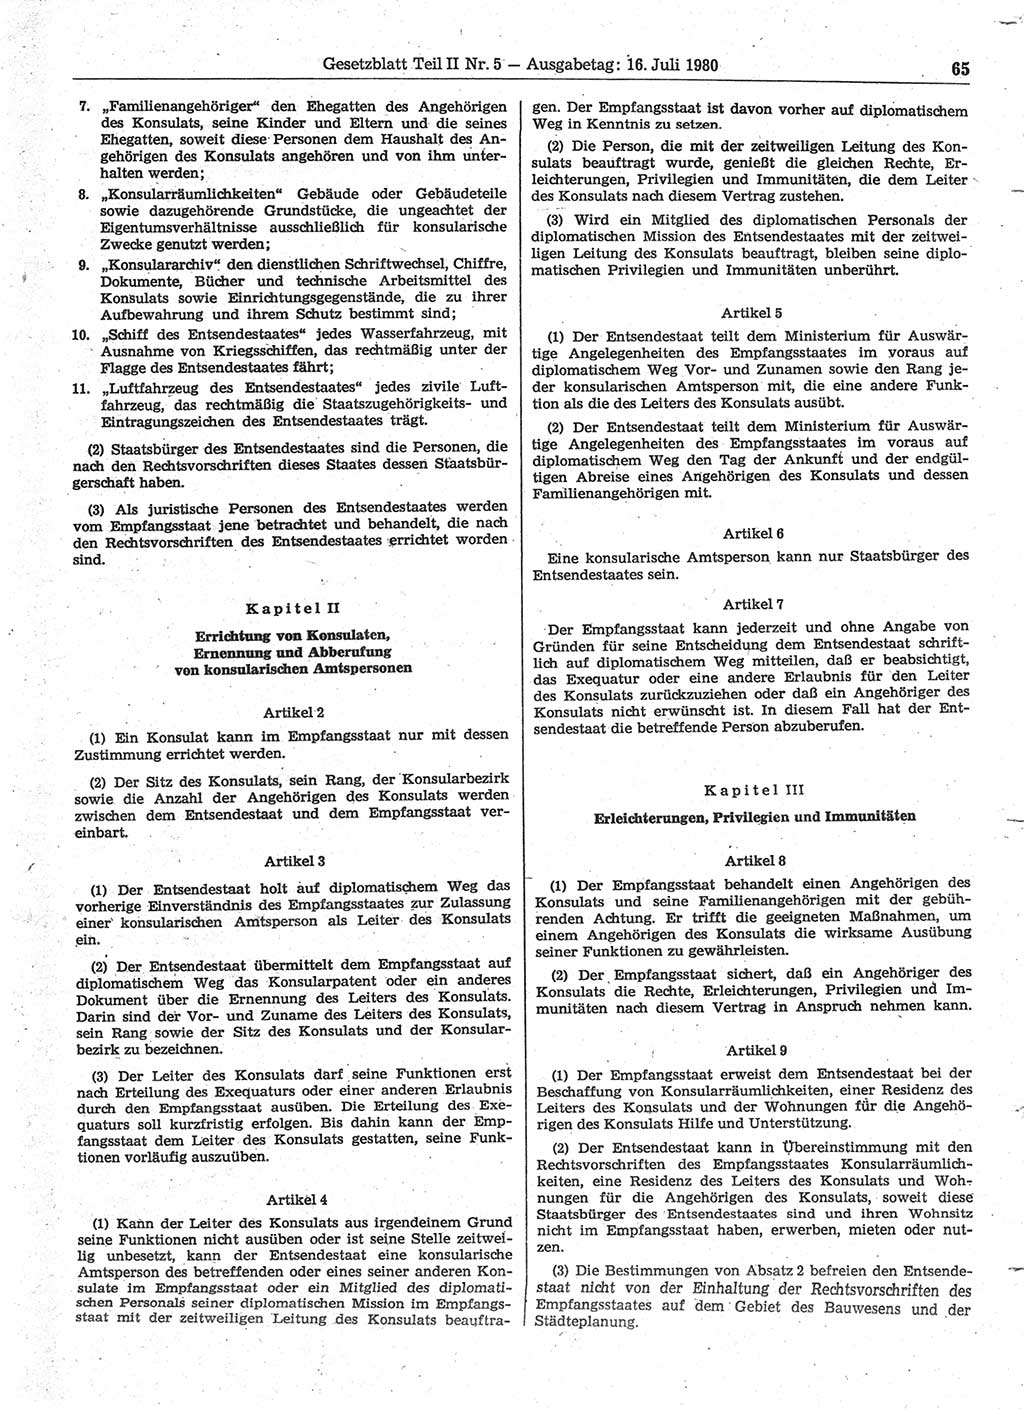 Gesetzblatt (GBl.) der Deutschen Demokratischen Republik (DDR) Teil ⅠⅠ 1980, Seite 65 (GBl. DDR ⅠⅠ 1980, S. 65)